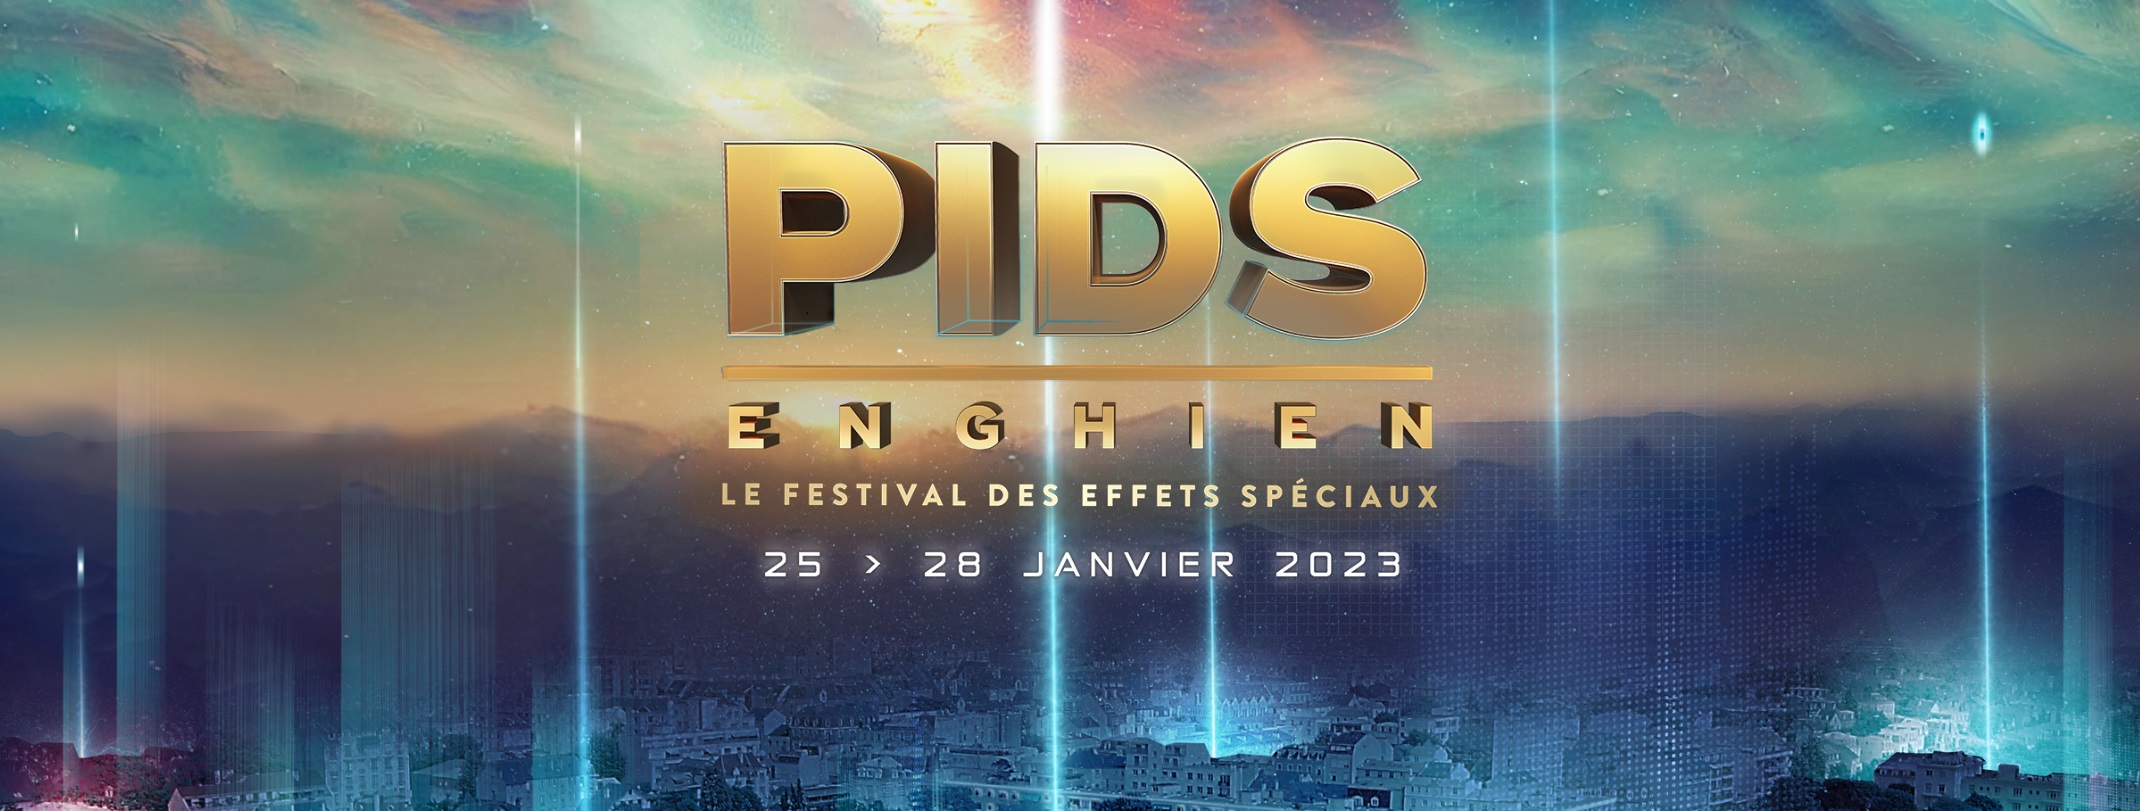 PIDS Enghien 2023 là sự kiện về hiệu ứng hình ảnh được mong chờ diễn ra tại Pháp.